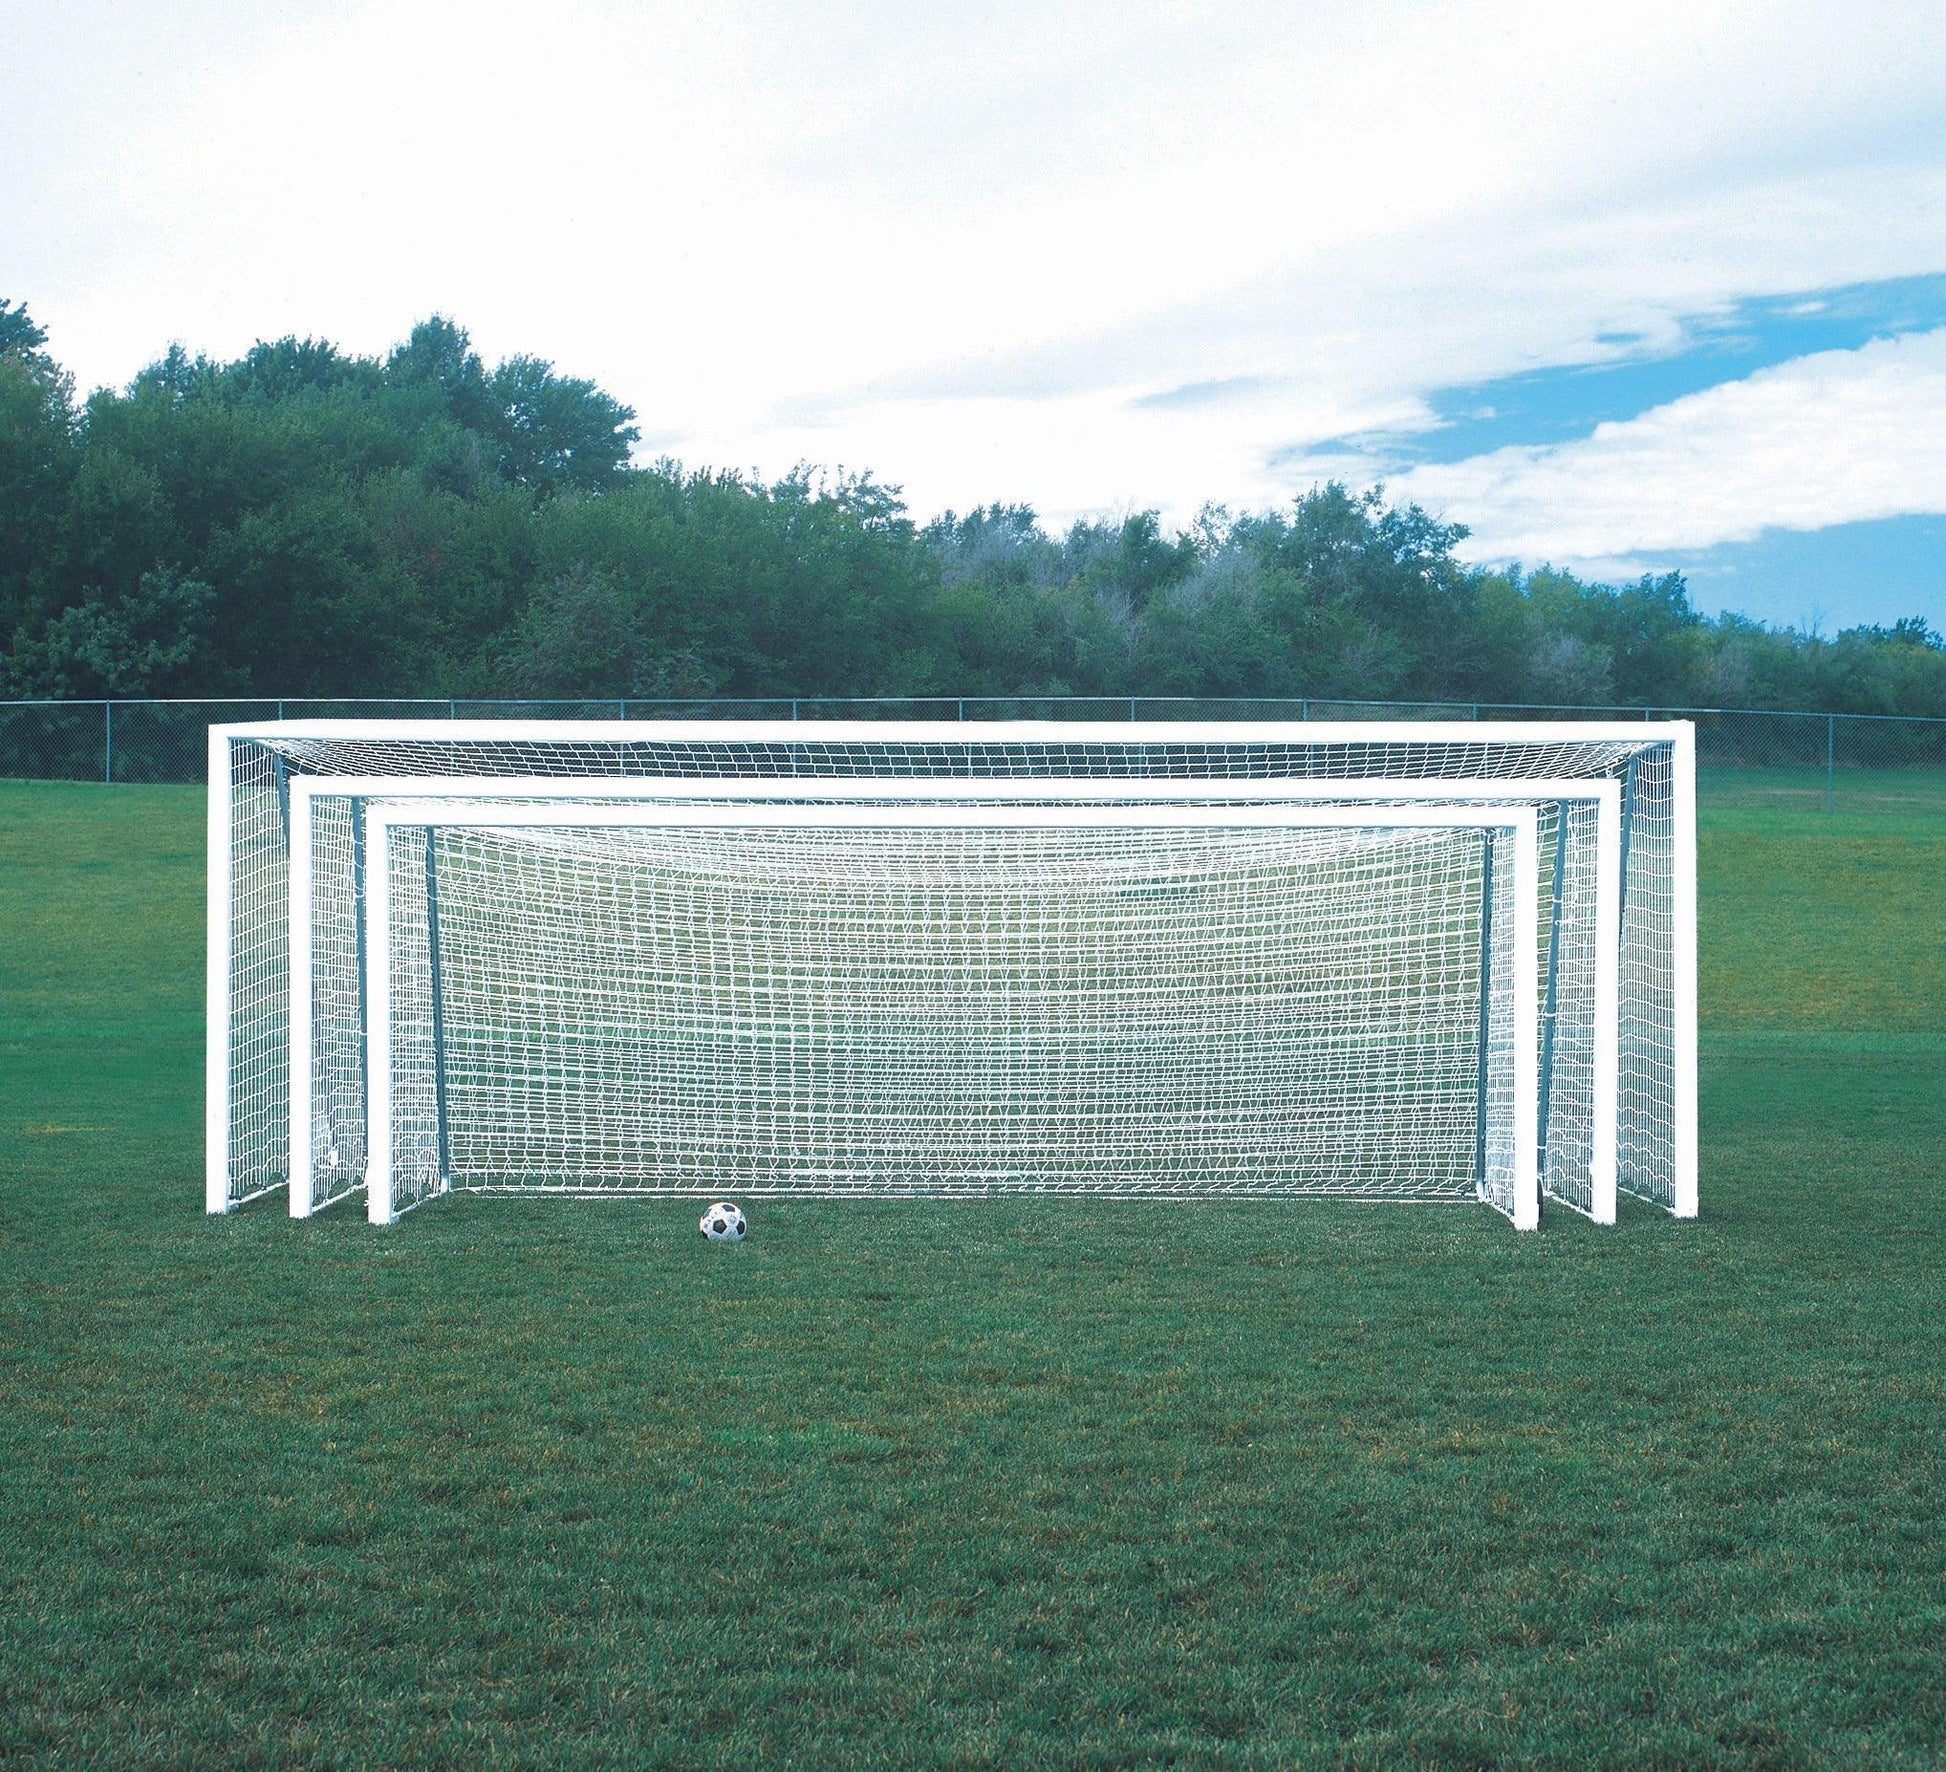 4" Round No-Tip Soccer Goal Packages - bisoninc